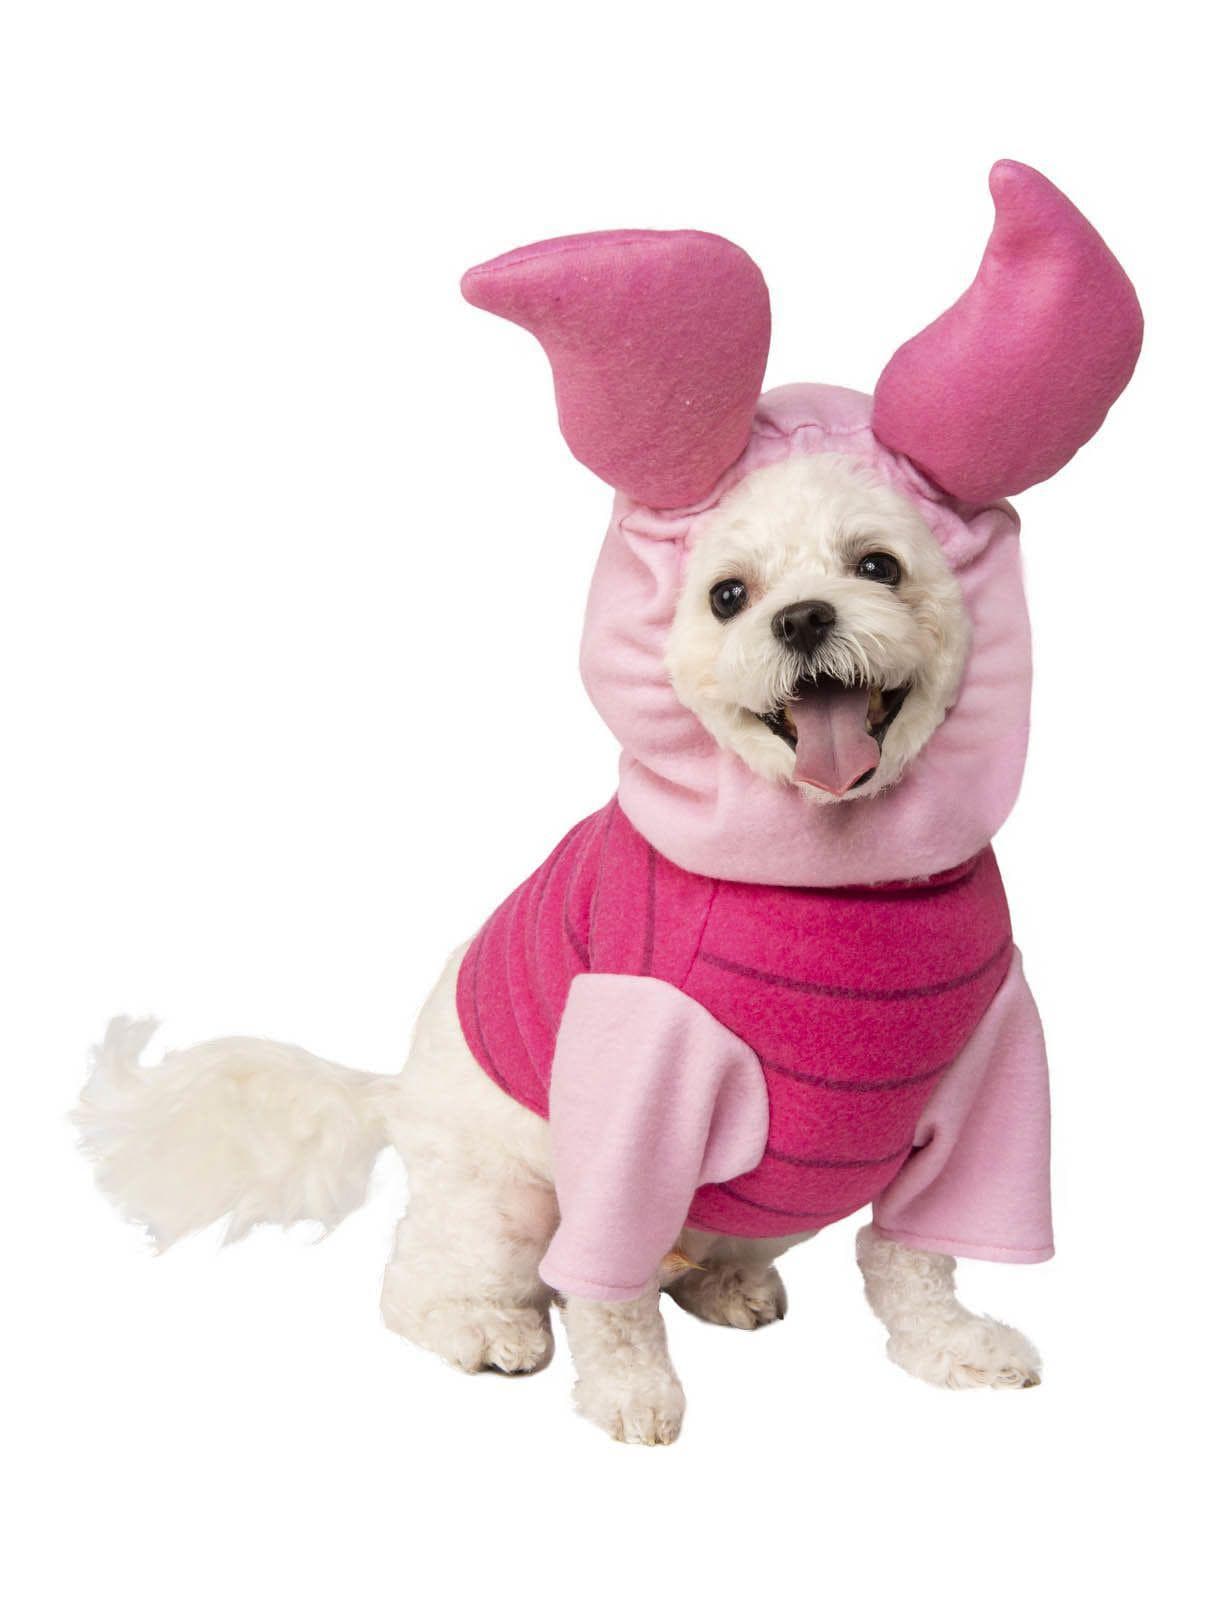 Piglet Pet Costume - costumes.com